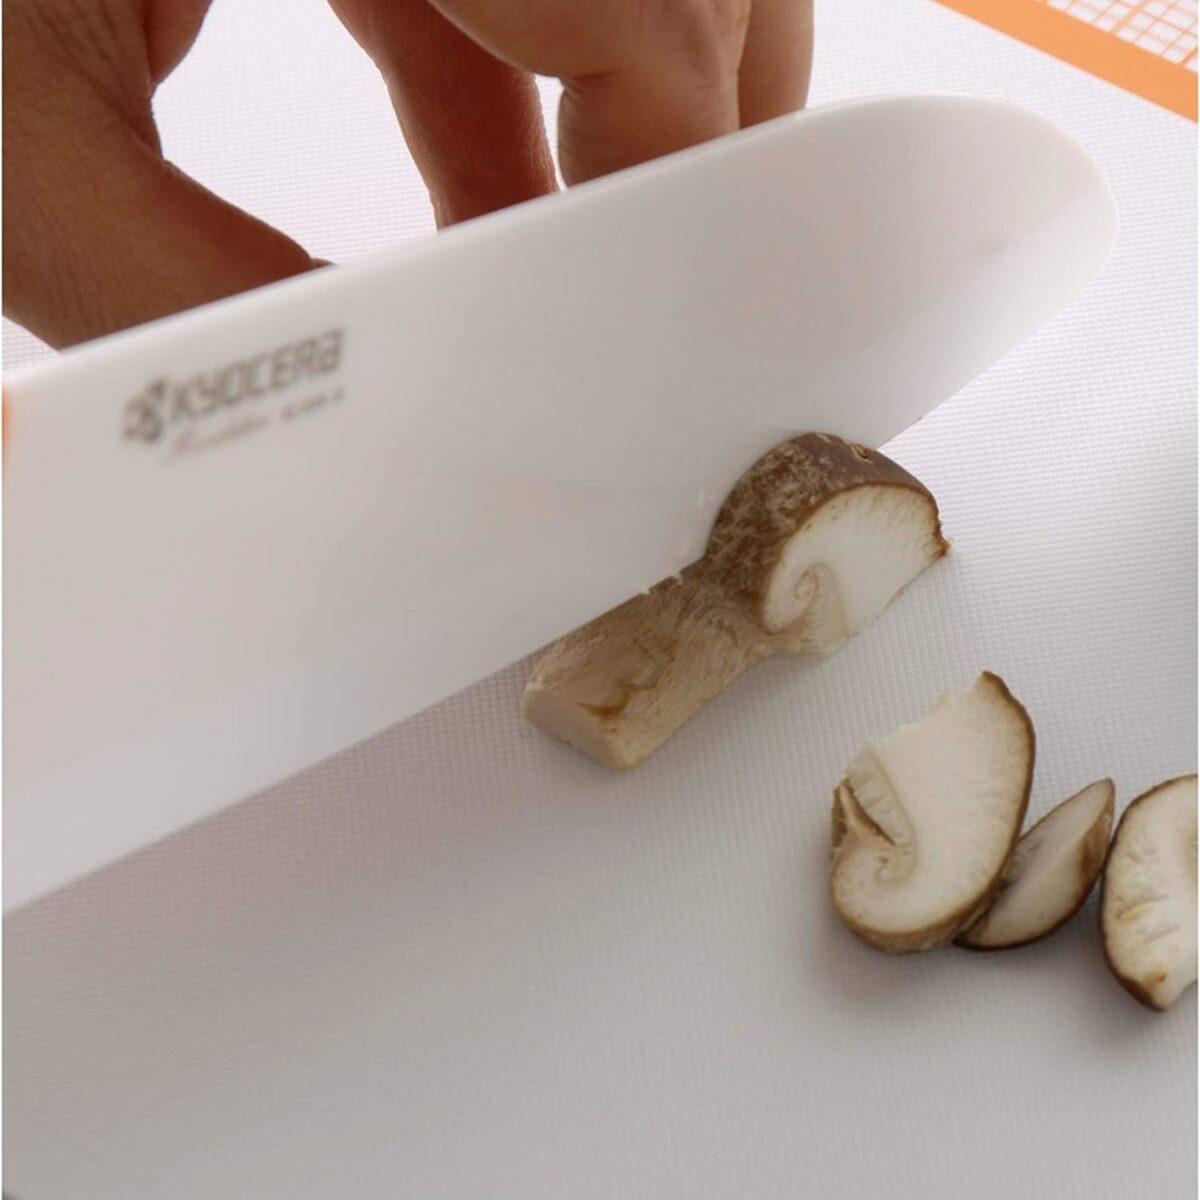 Комплект керамичен нож KYOCERA серия GEN и белачка - цвят бял